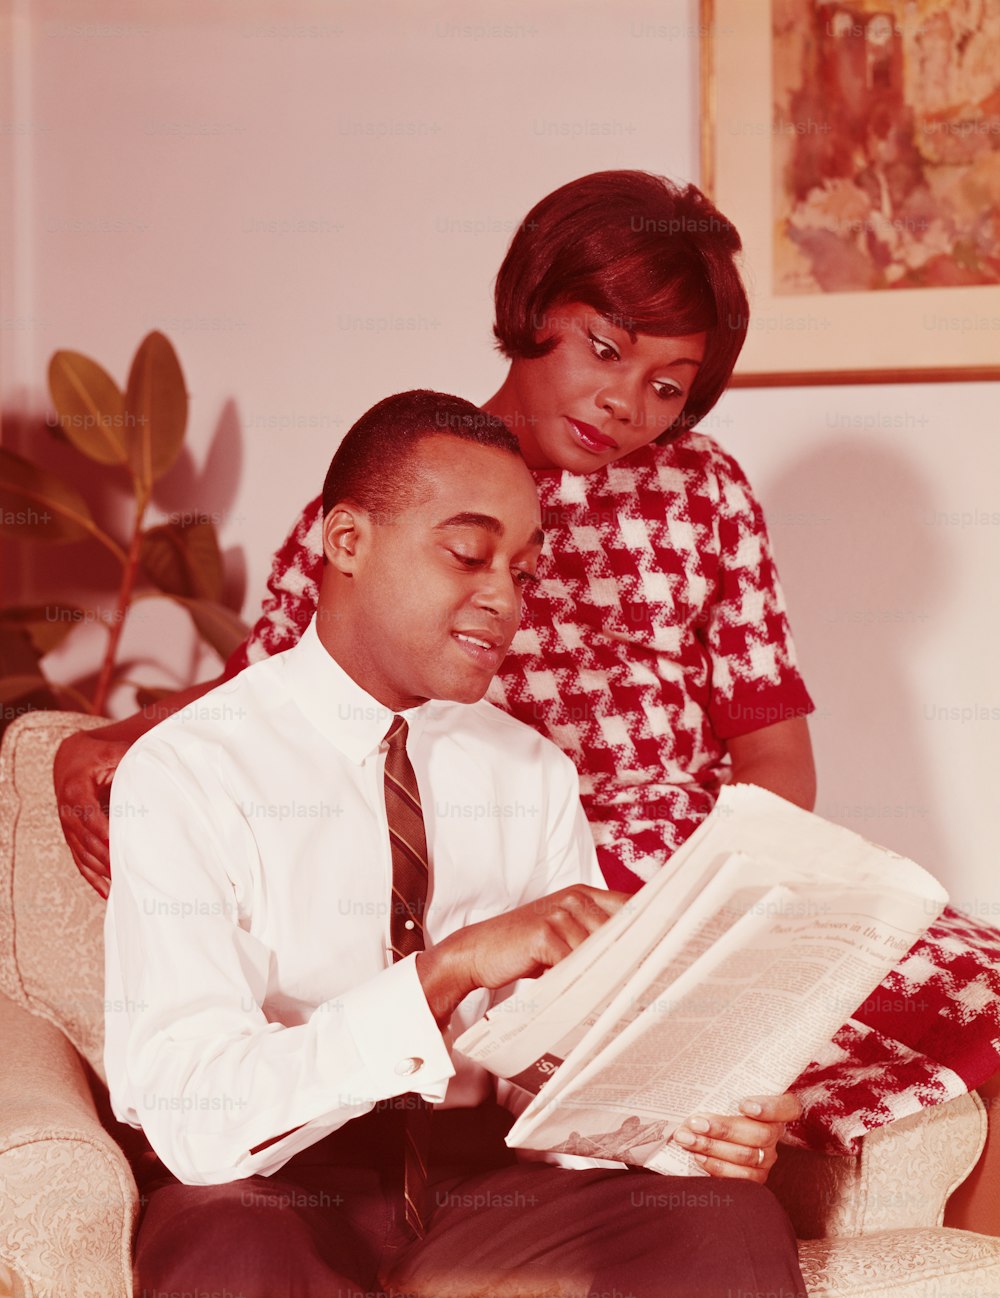 ESTADOS UNIDOS - POR VOLTA DE 1960: Casal sentado na cadeira, homem lendo jornal, mulher empoleirada no braço da cadeira, olhando por cima do ombro do homem.